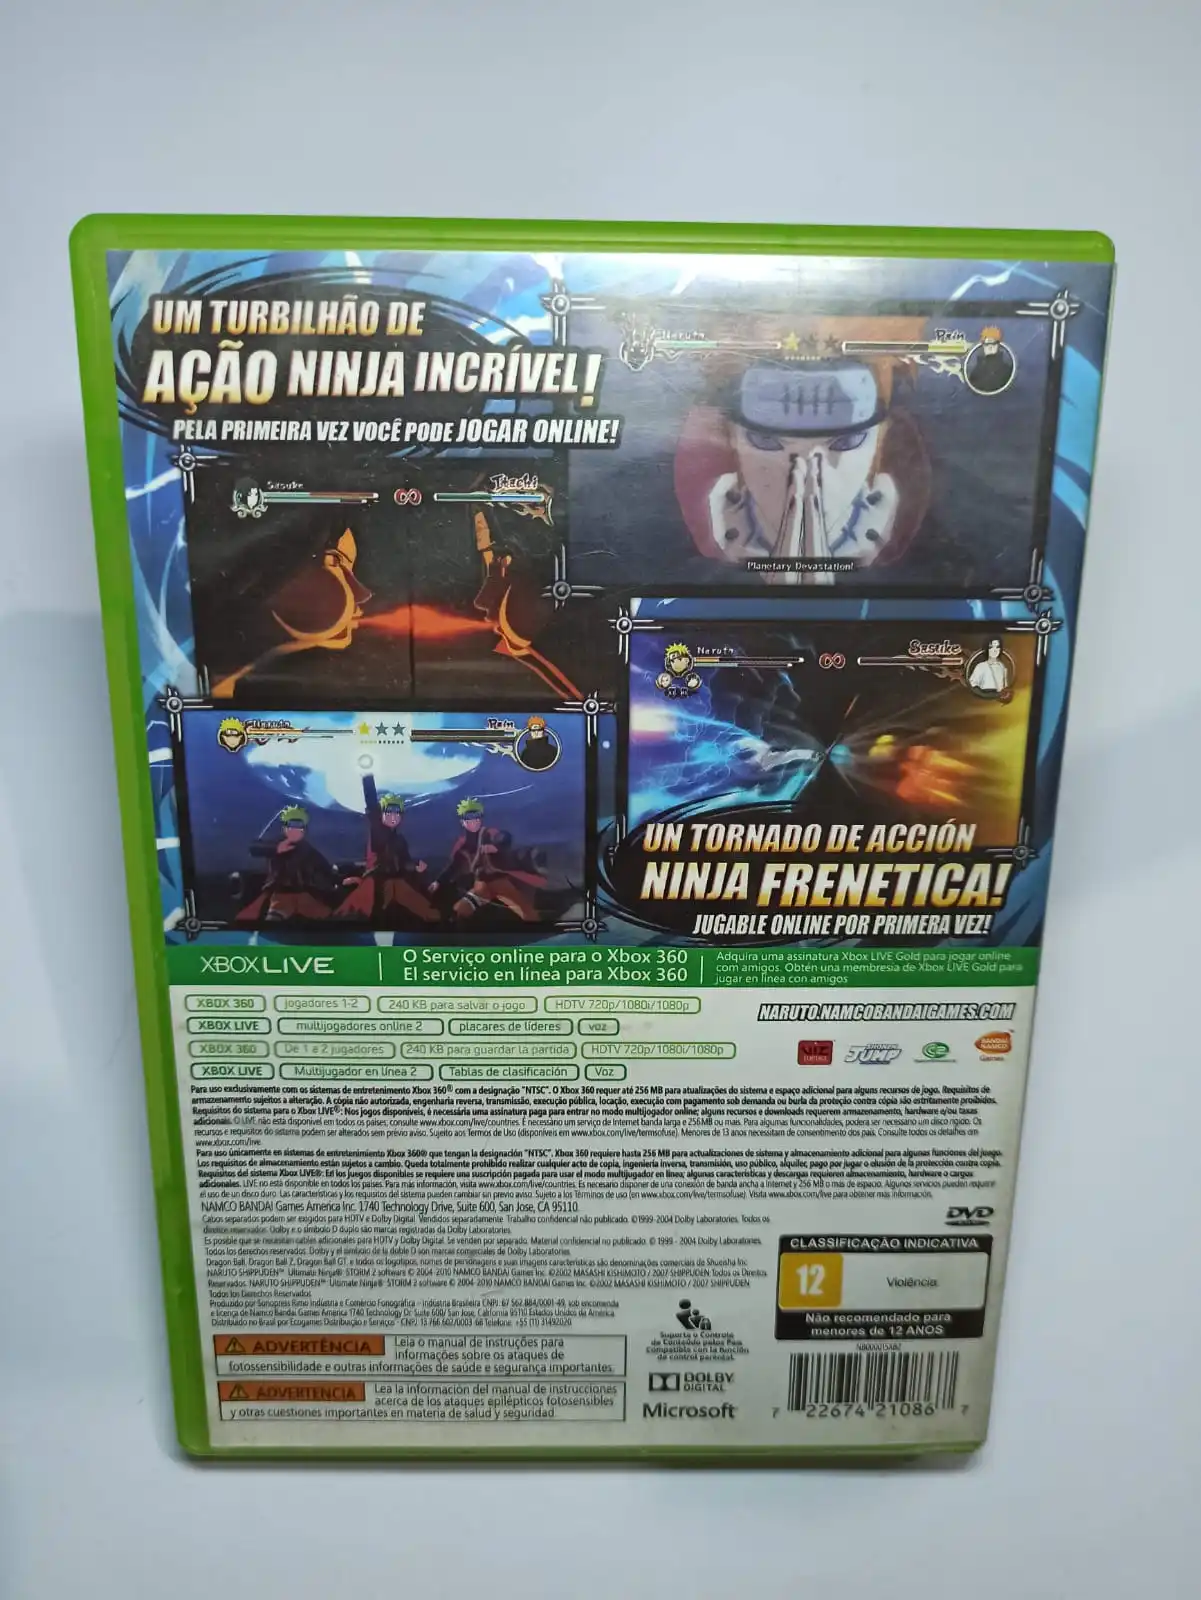 Jogo NARUTO Playstation 2 - original e como novo 15 euros Évora de